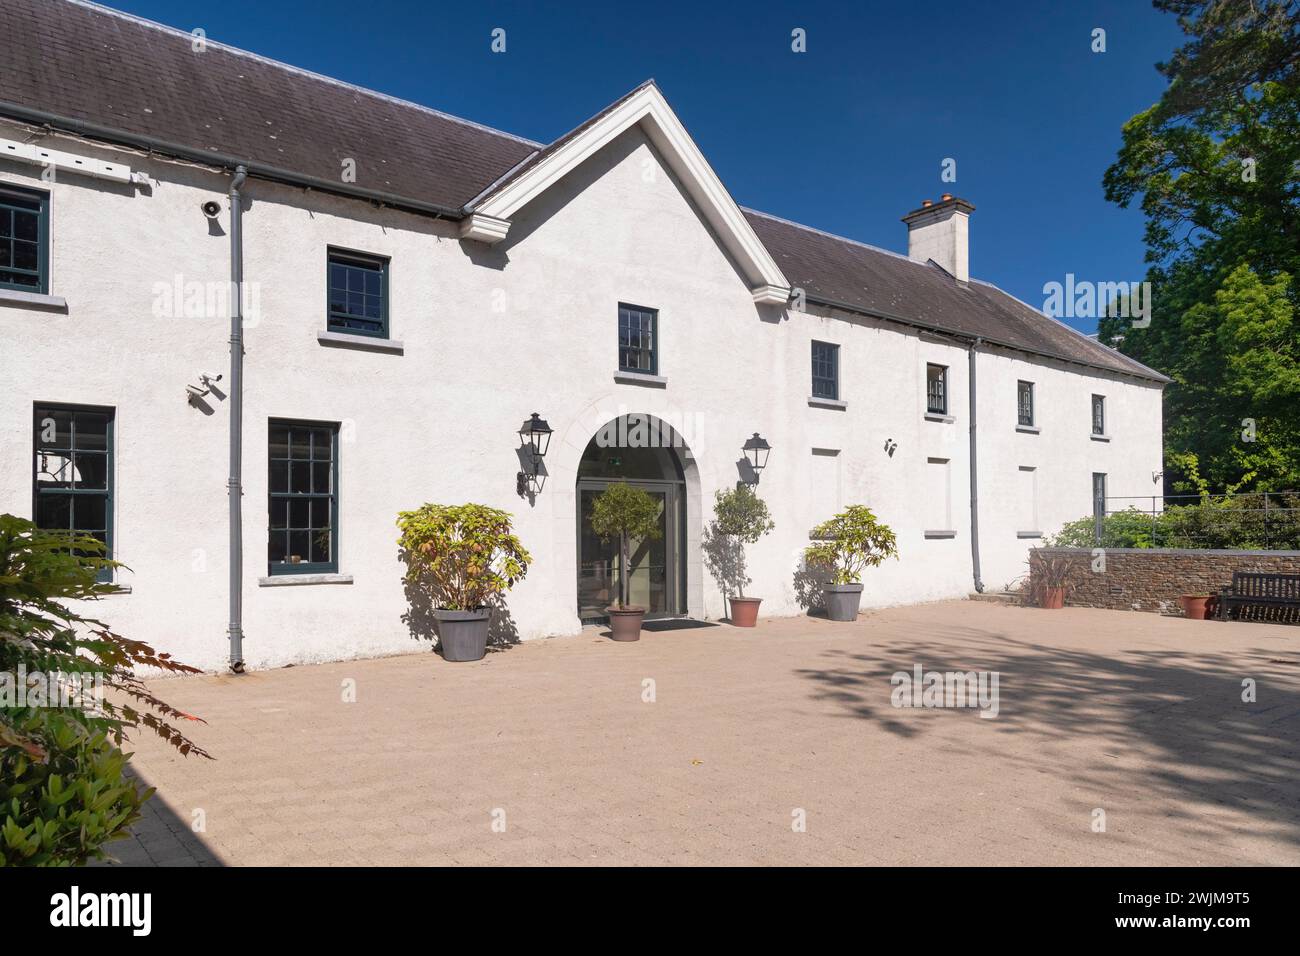 Irlande, comté de Kerry, Killarney, Killarney House and Gardens, ancienne demeure restaurée du XVIIIe siècle des comtes de Kenmare. Banque D'Images